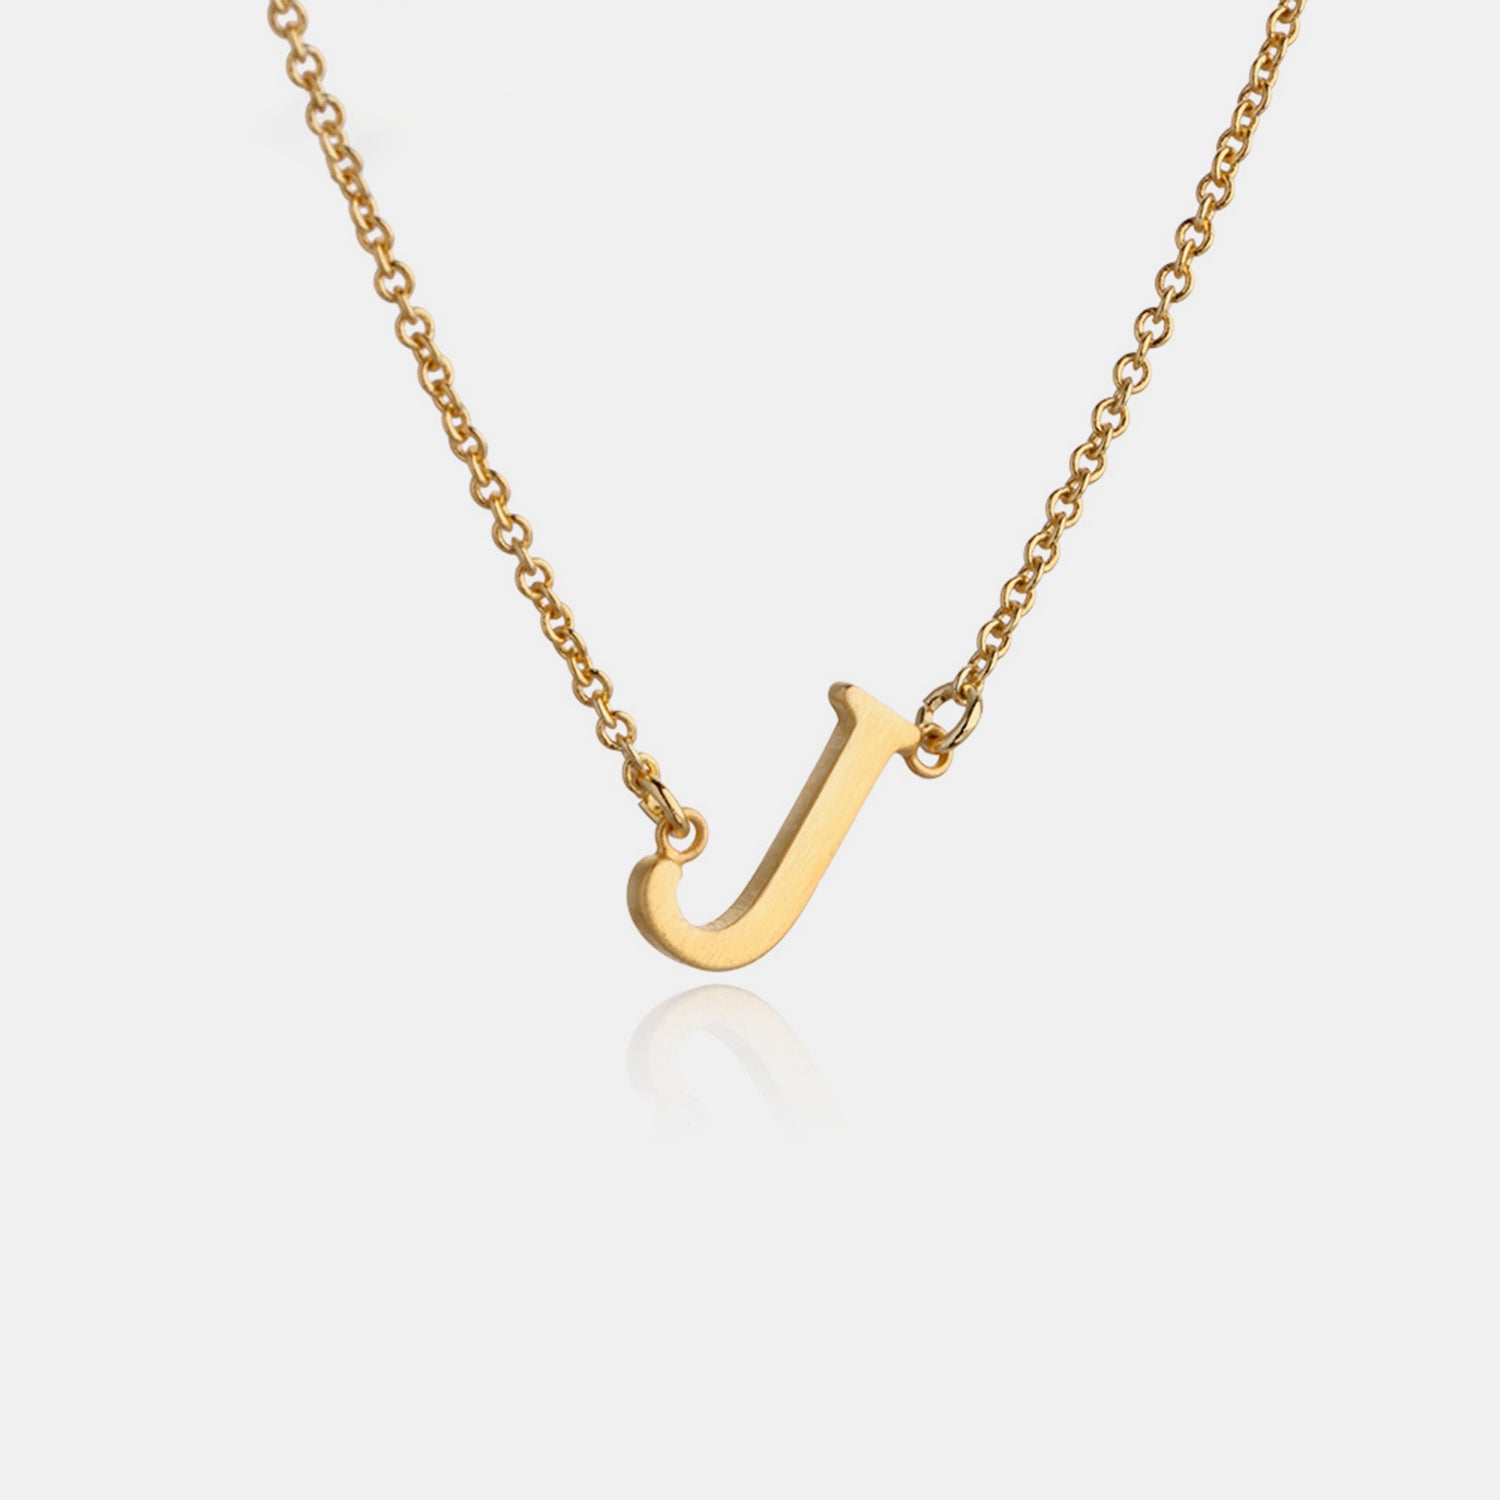 Unique Copper Necklace with Alphabet Pendant